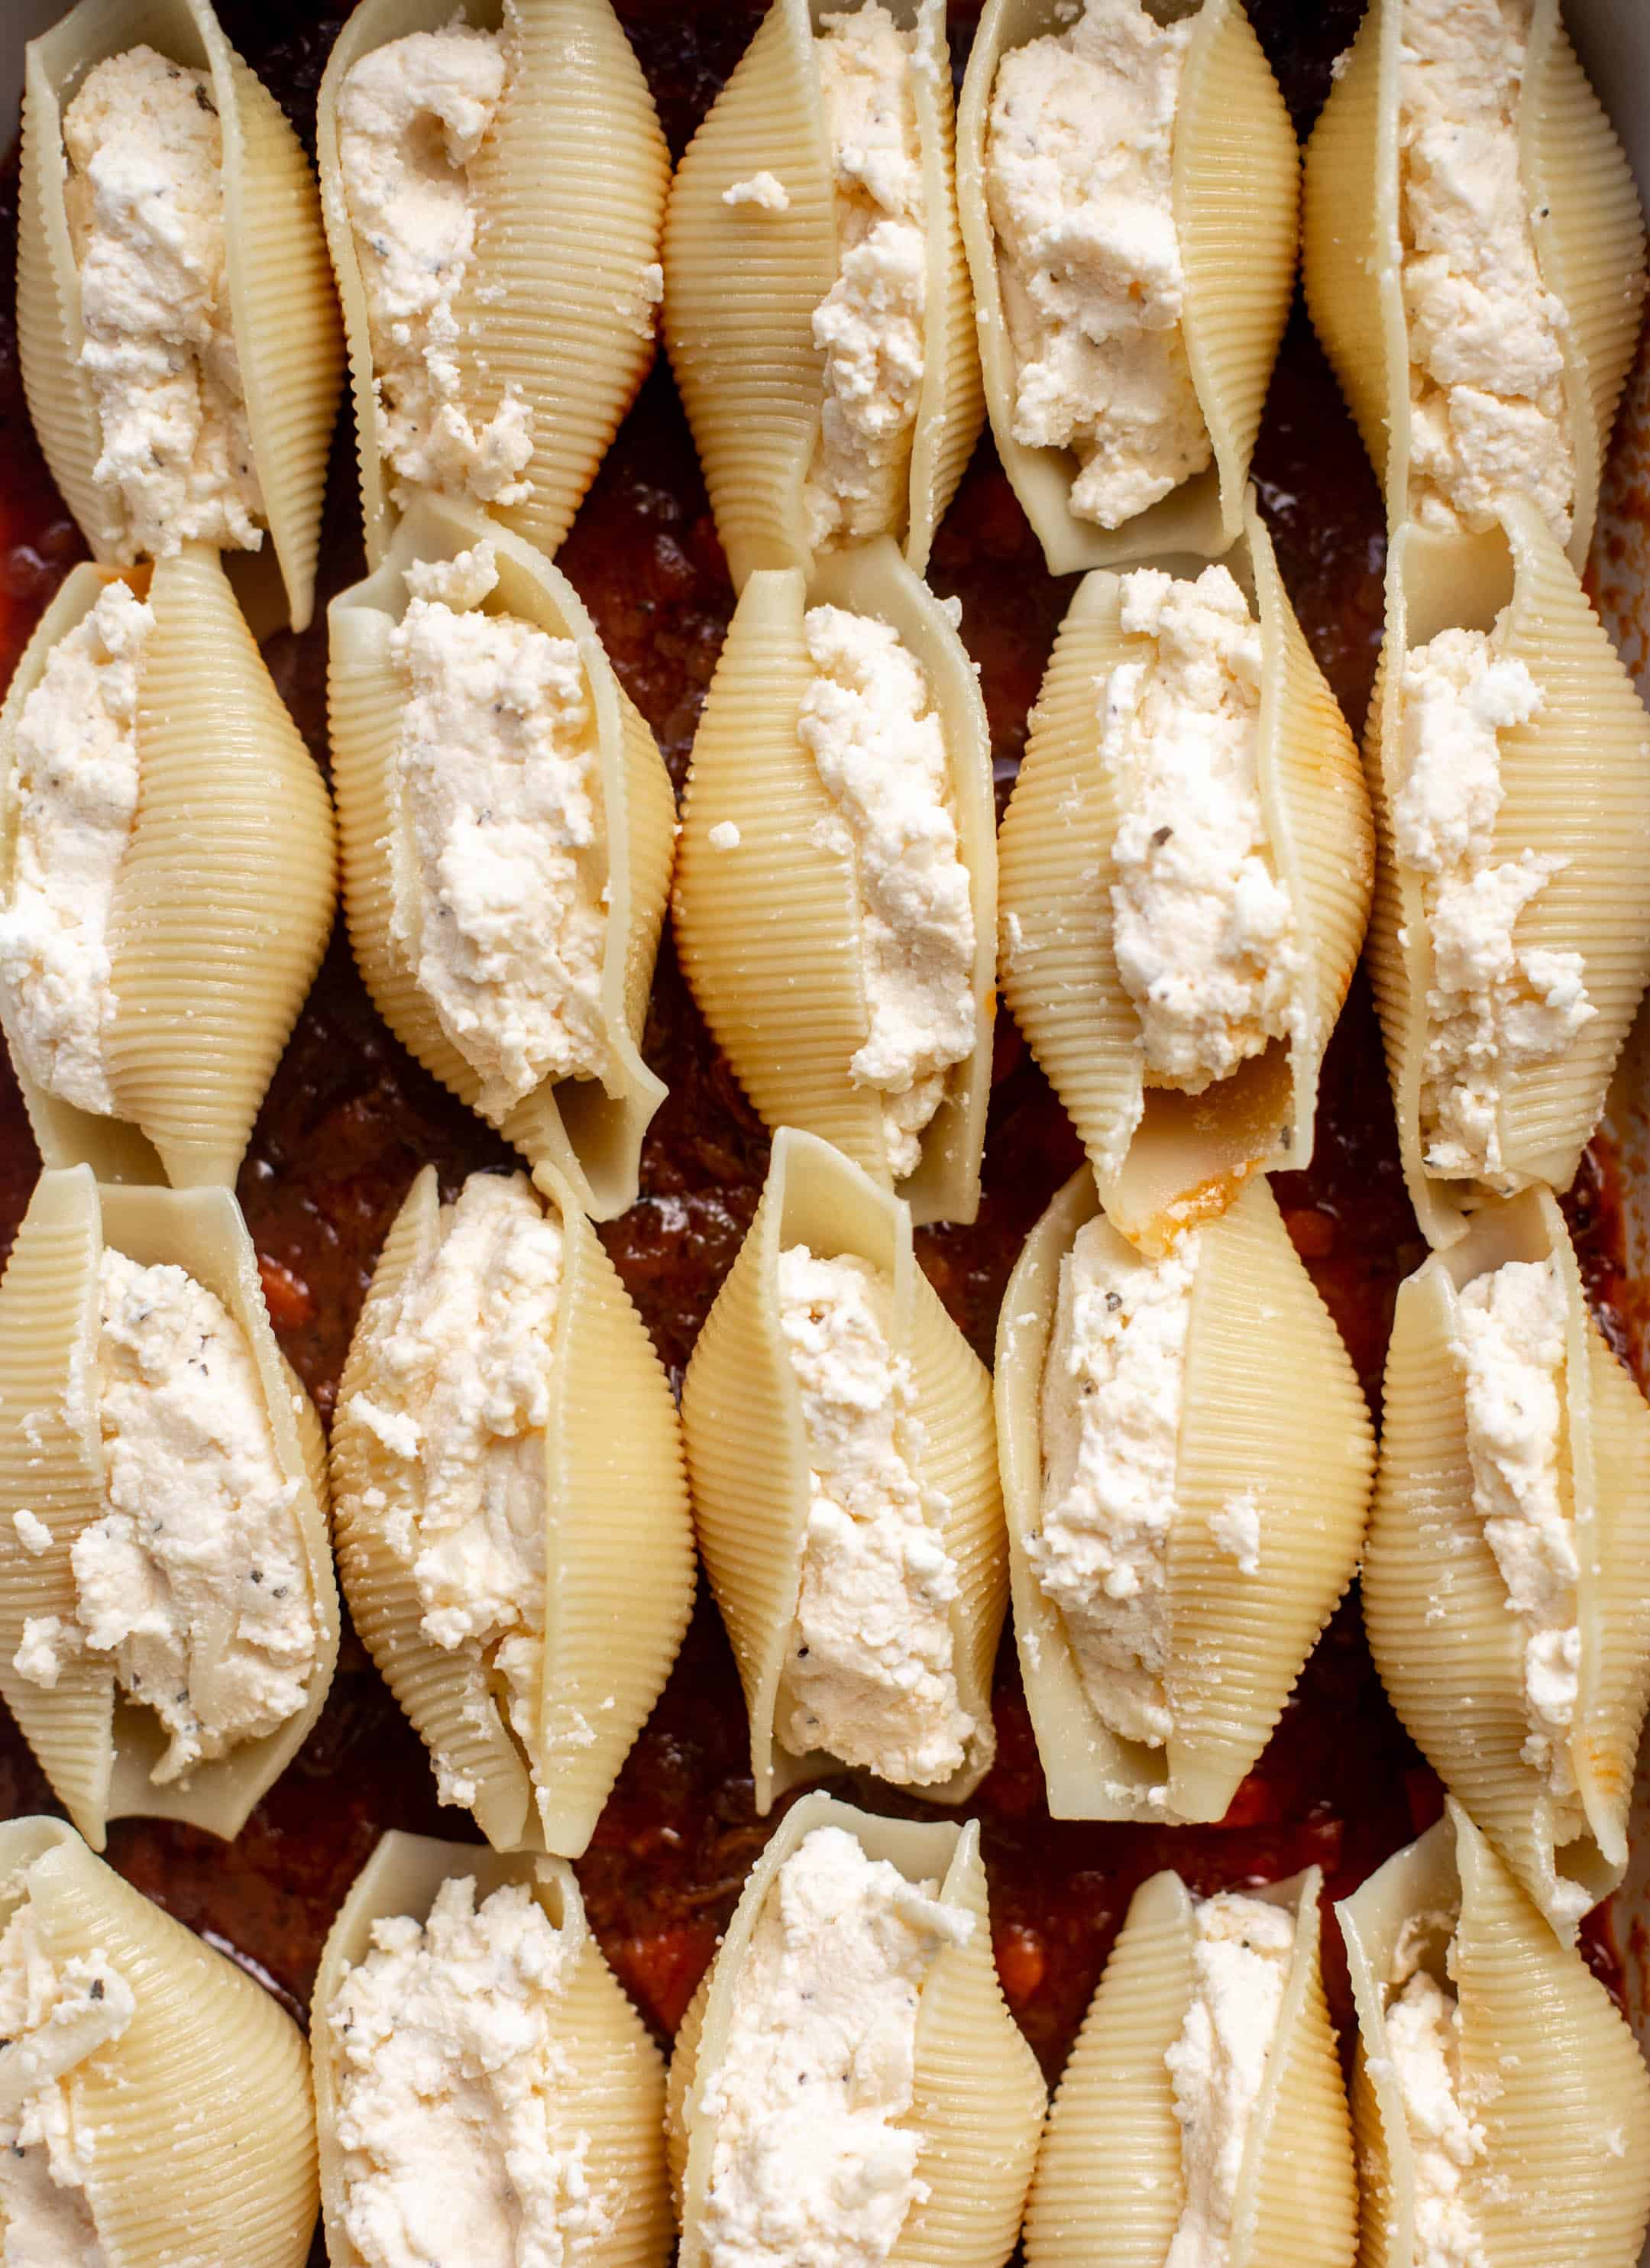 pasta shells stuffed with ricotta